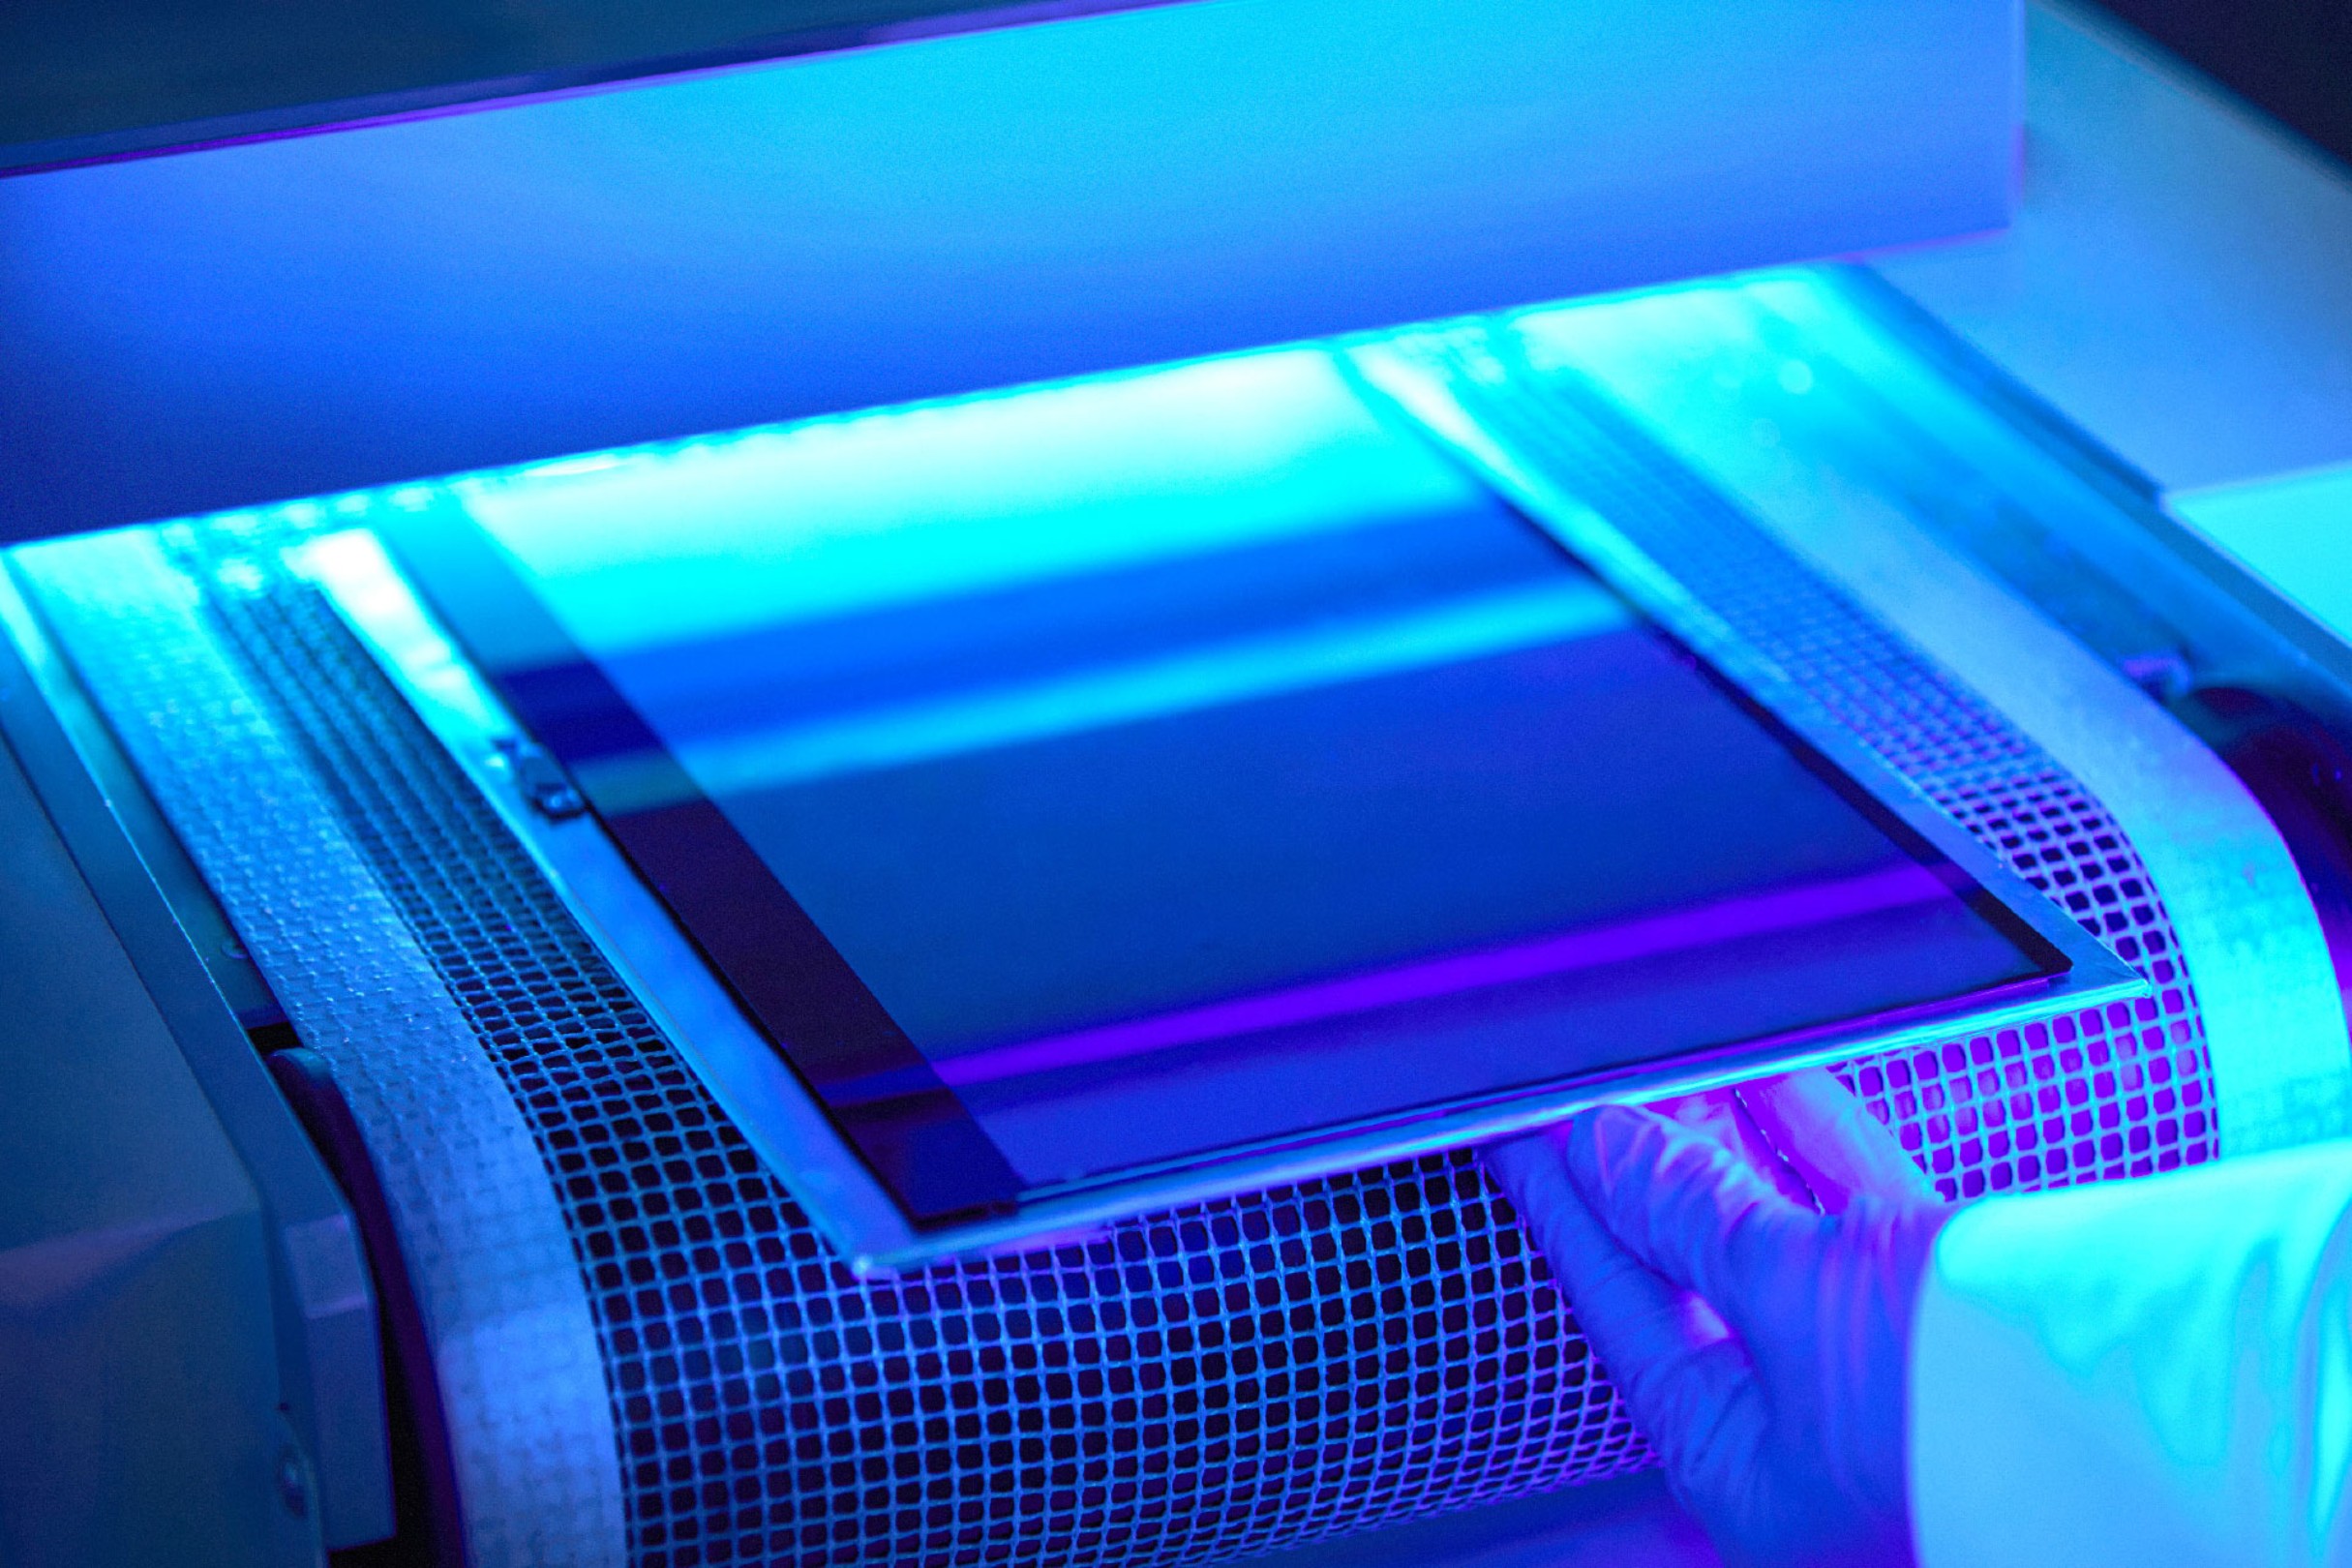 Der Vernetzungsprozess wird durch UV-Licht angestoßen, was den Herstellern ein effizientes Arbeiten erlaubt.